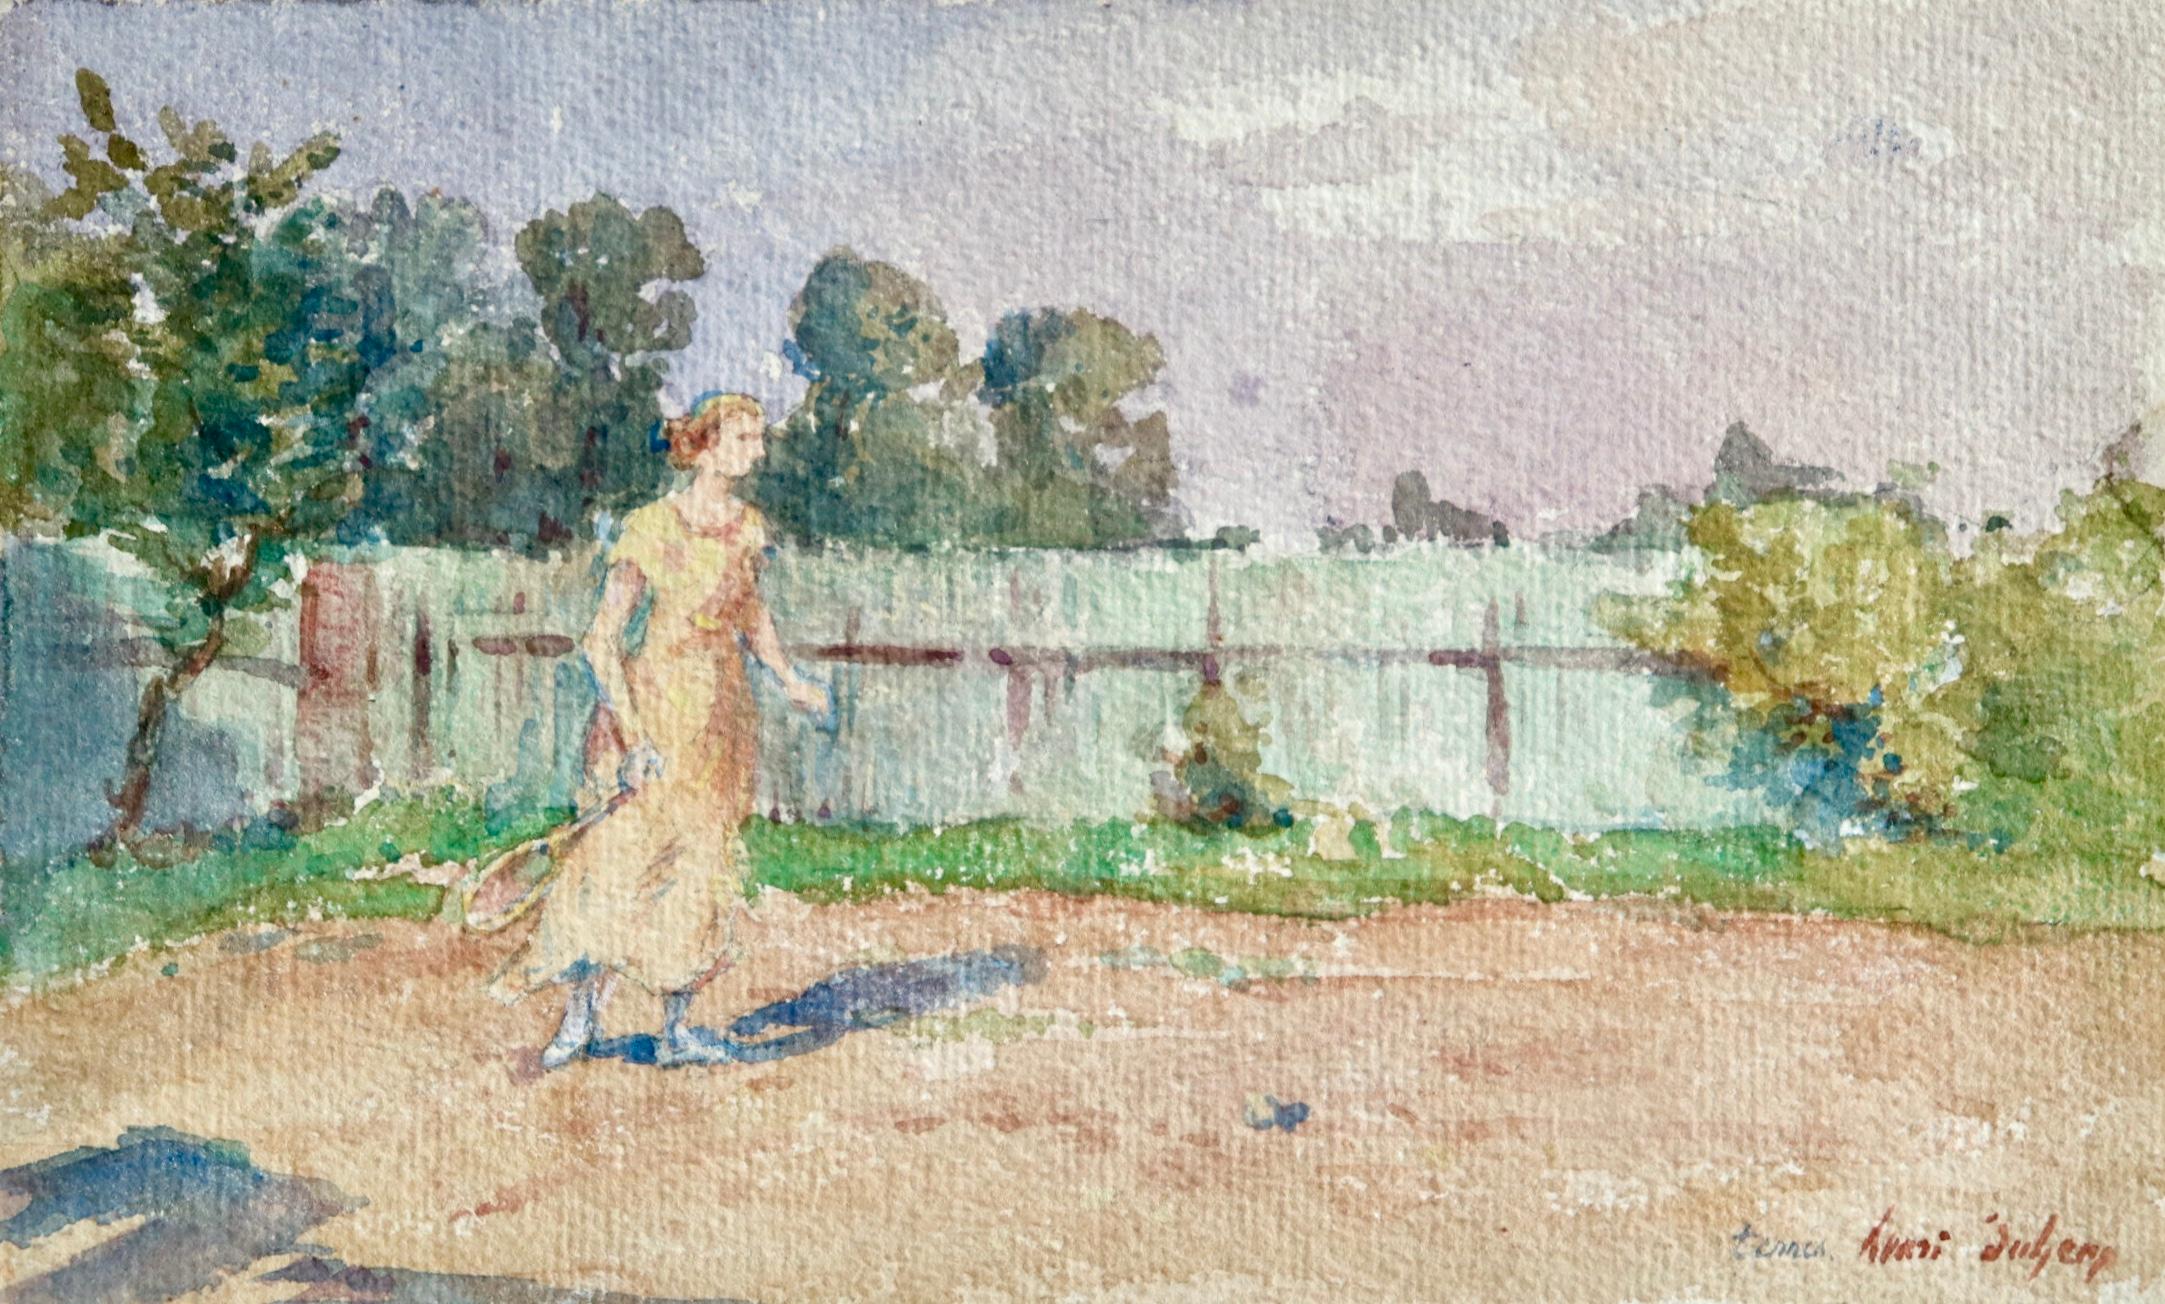 Figurative Art Henri Duhem - Aquarelle impressionniste « Woman Playing Tennis in Landscape » de H Duhem